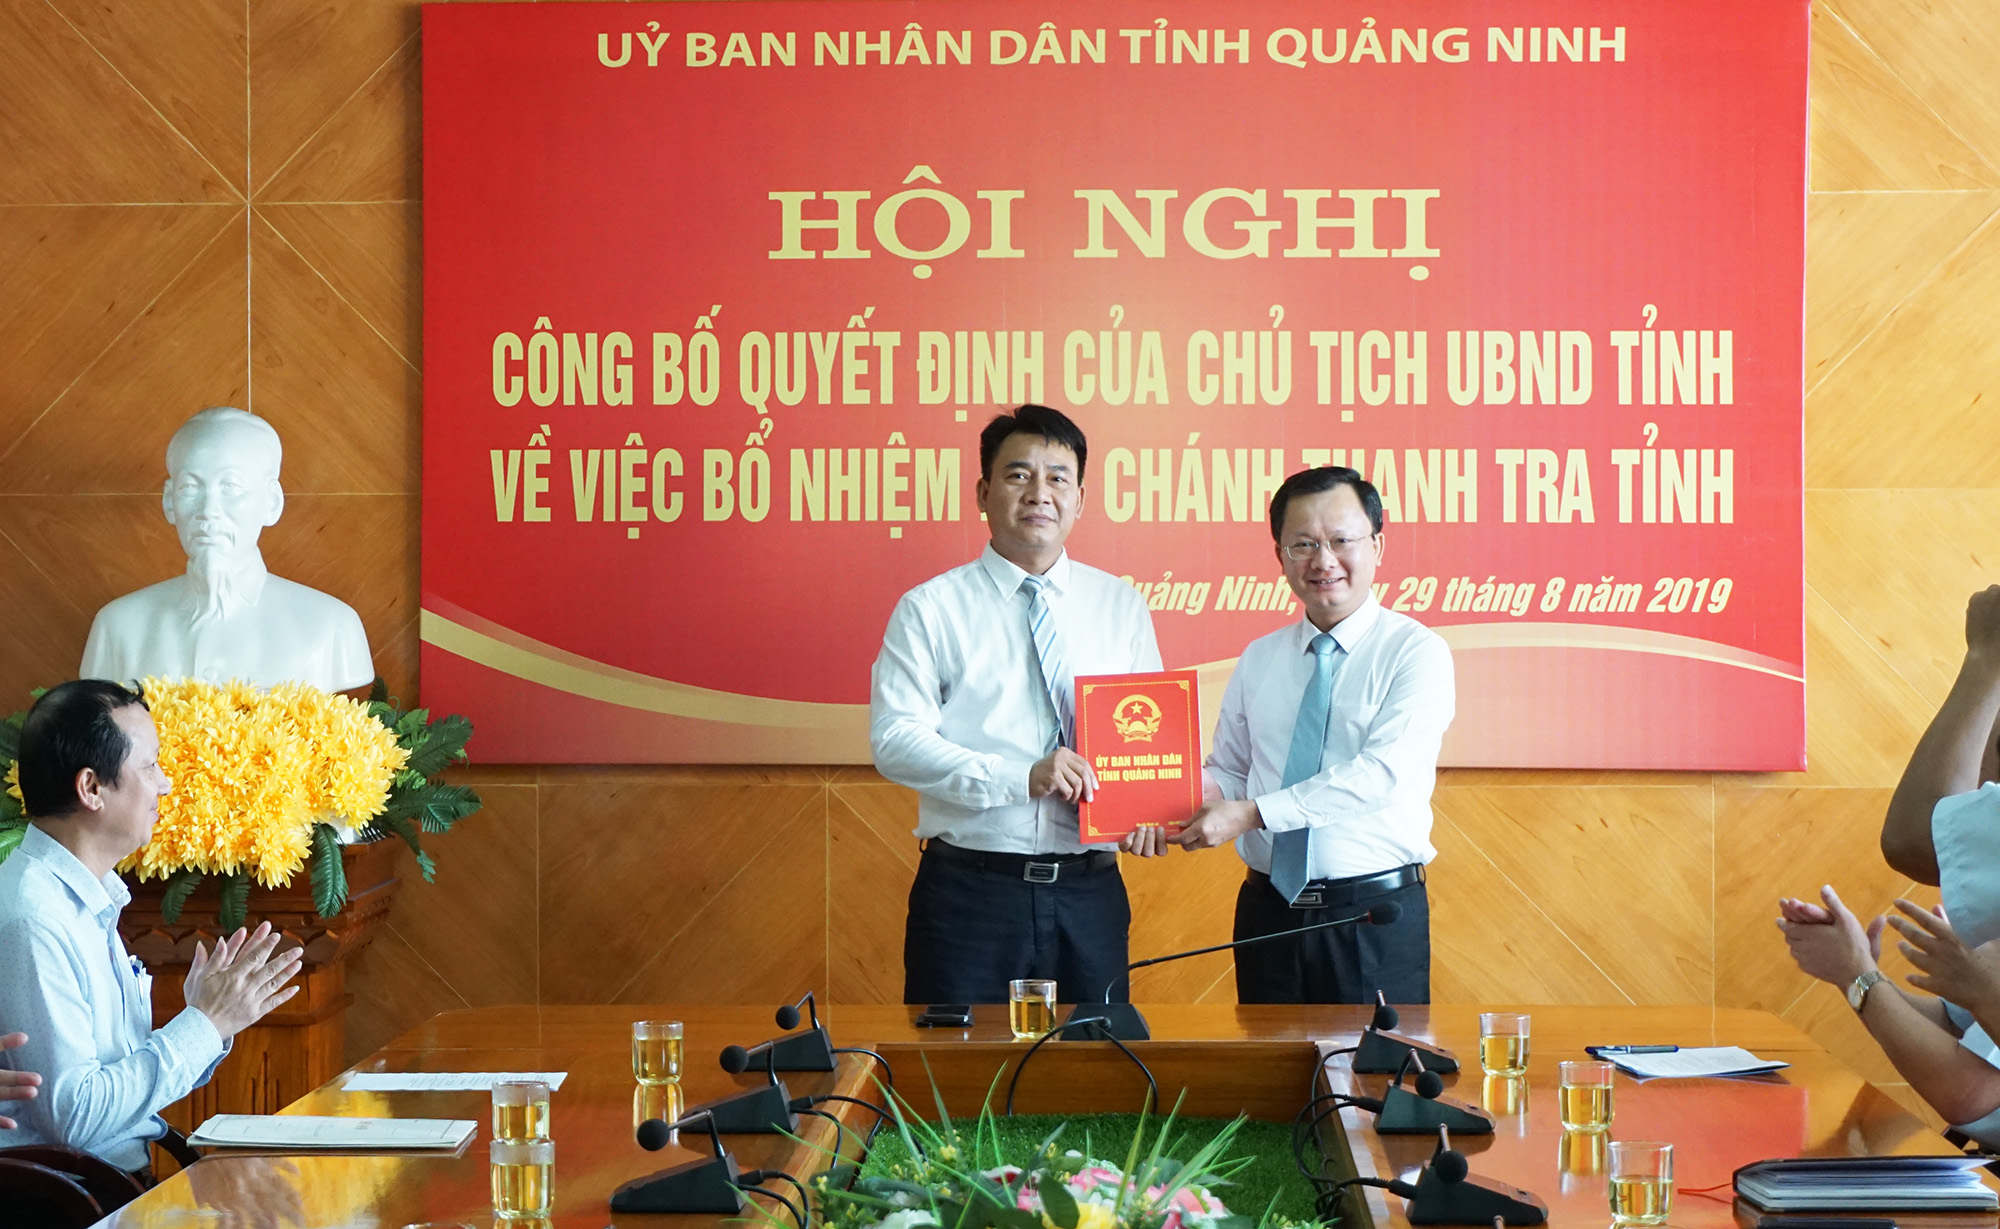 Phó Chủ tịch UBND tỉnh, Cao Tường Huy trao quyết định cho đồng chí Nguyễn Hữu Long.